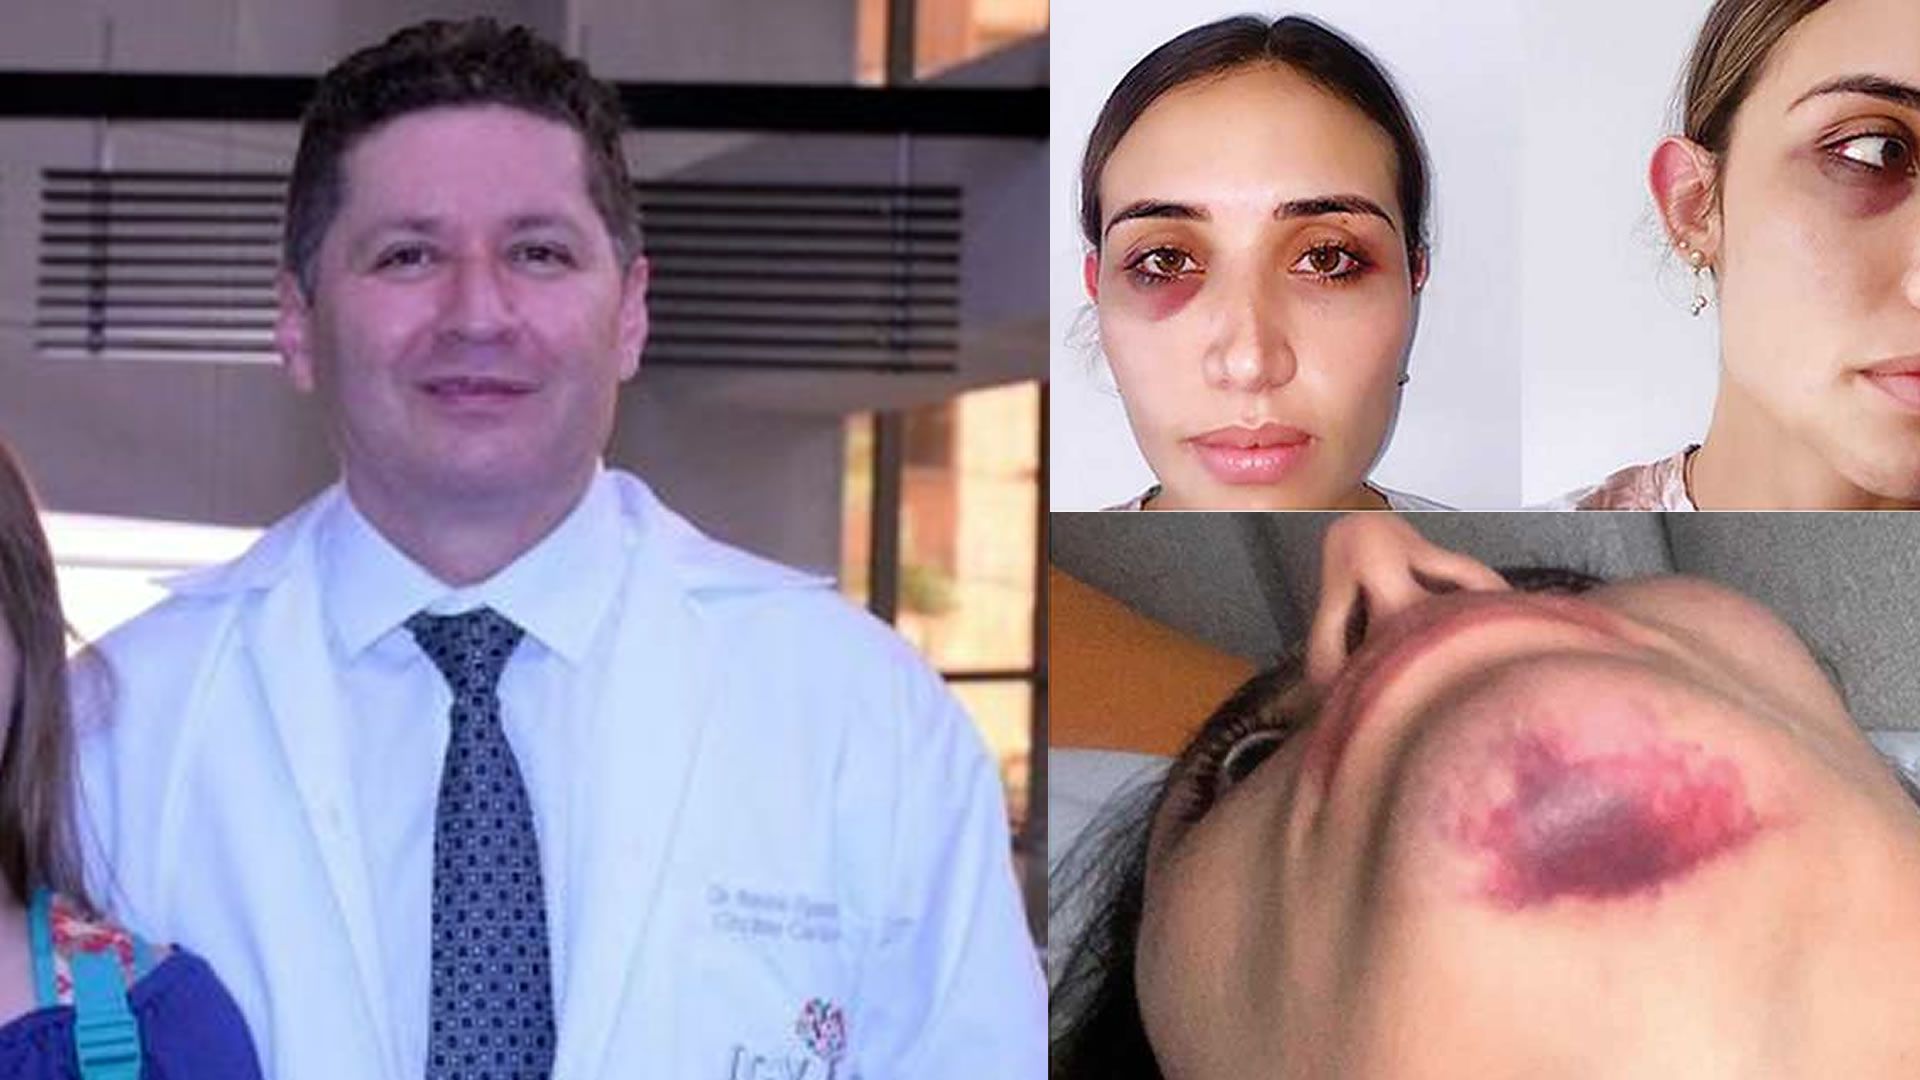 Otra médica suma su testimonio tras caso de agresión a mujer por el cardiólogo Antonio Figueredo.